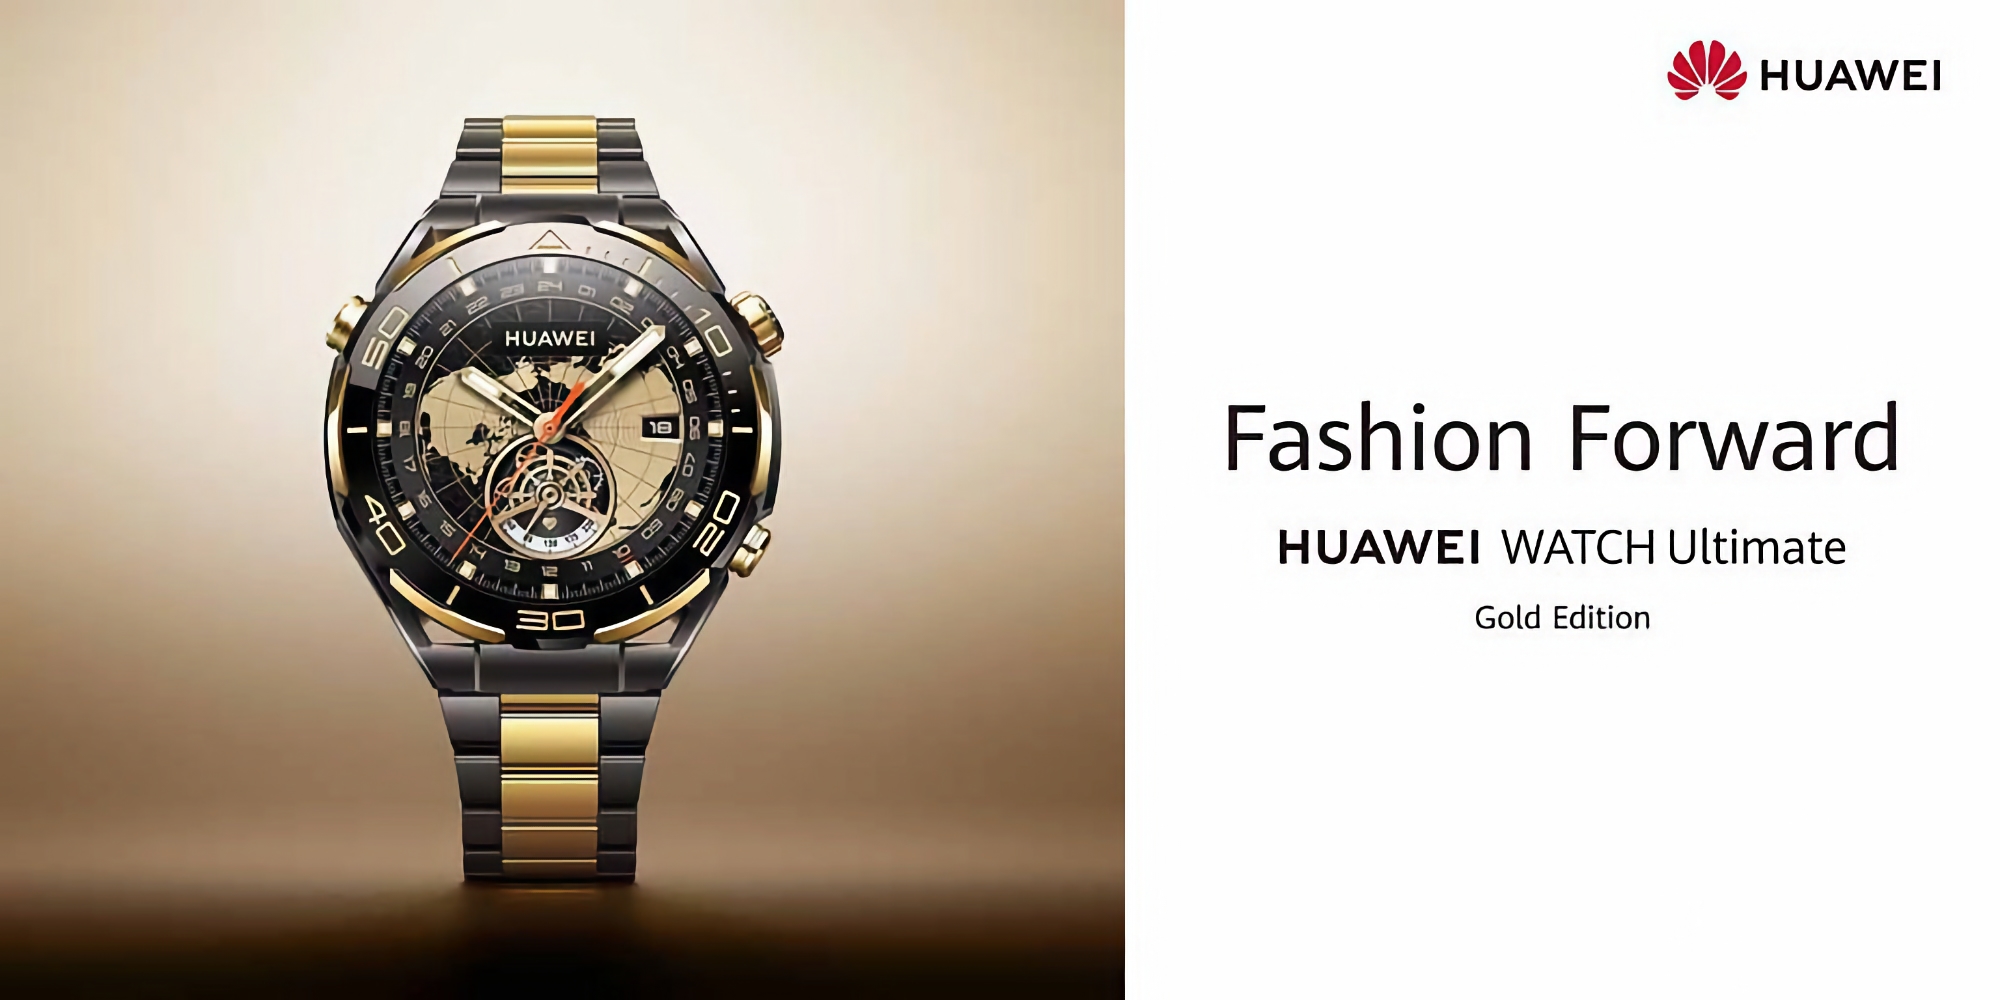 Huawei Watch Ultimate Gold Edition: Smartwatch mit goldenen Gehäuseelementen, Saphirglas und Titanarmband für 2999 Euro